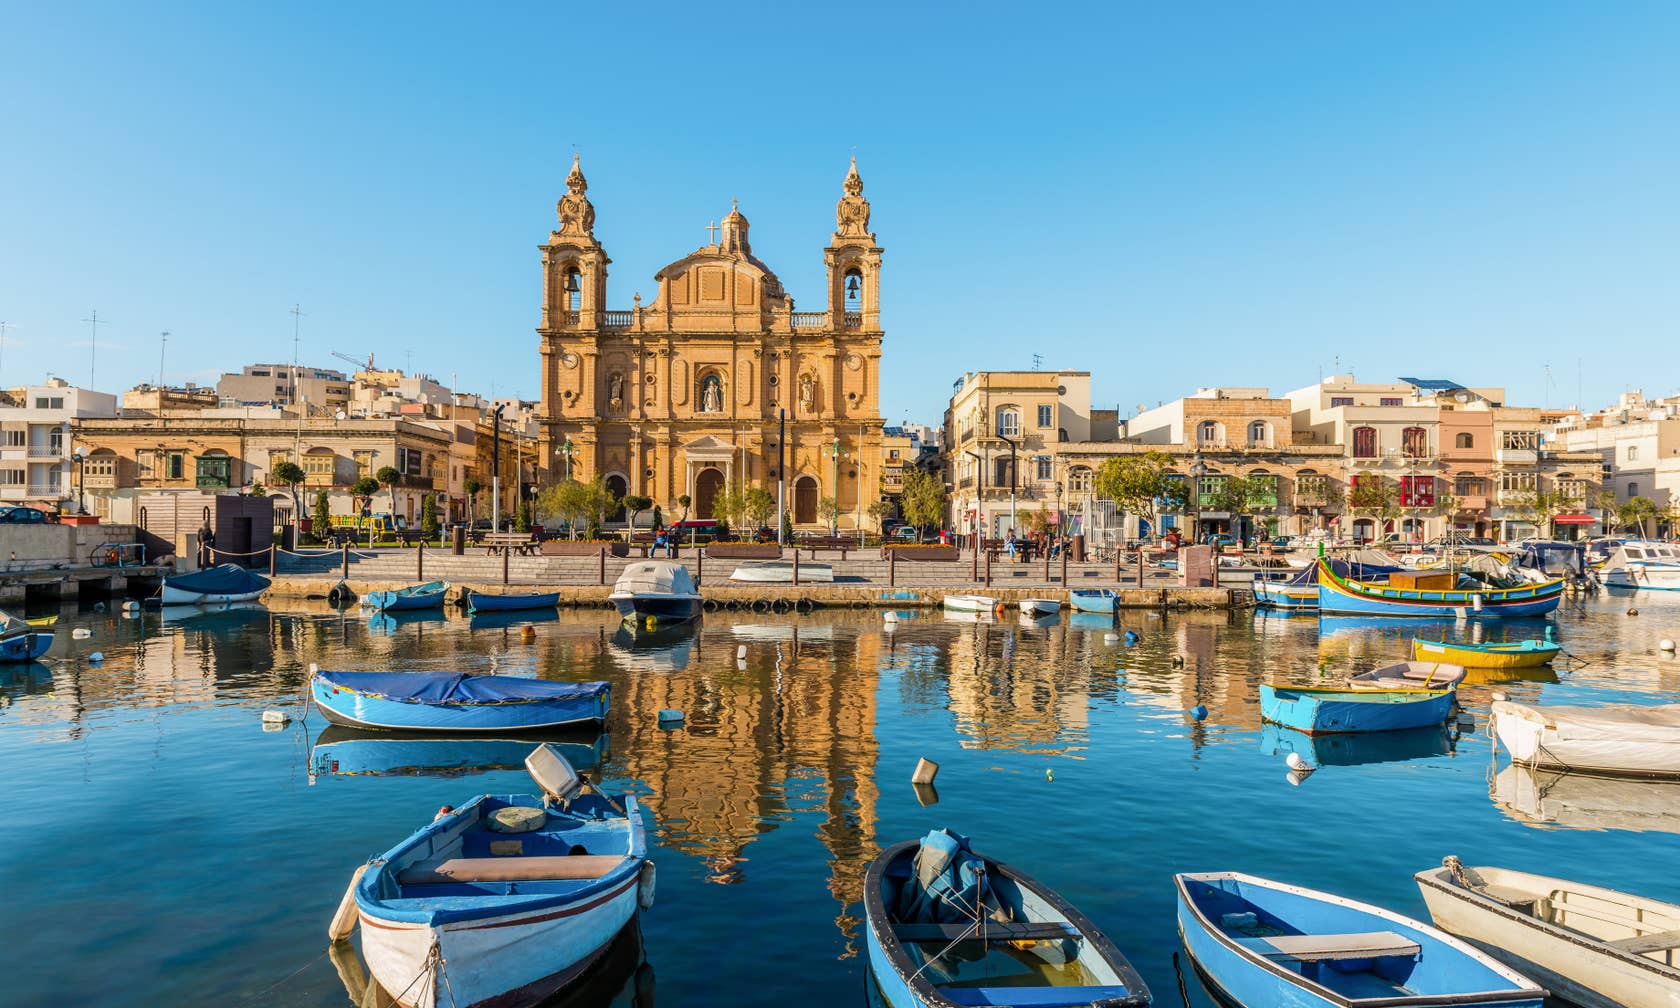 Sewa tempat di Malta